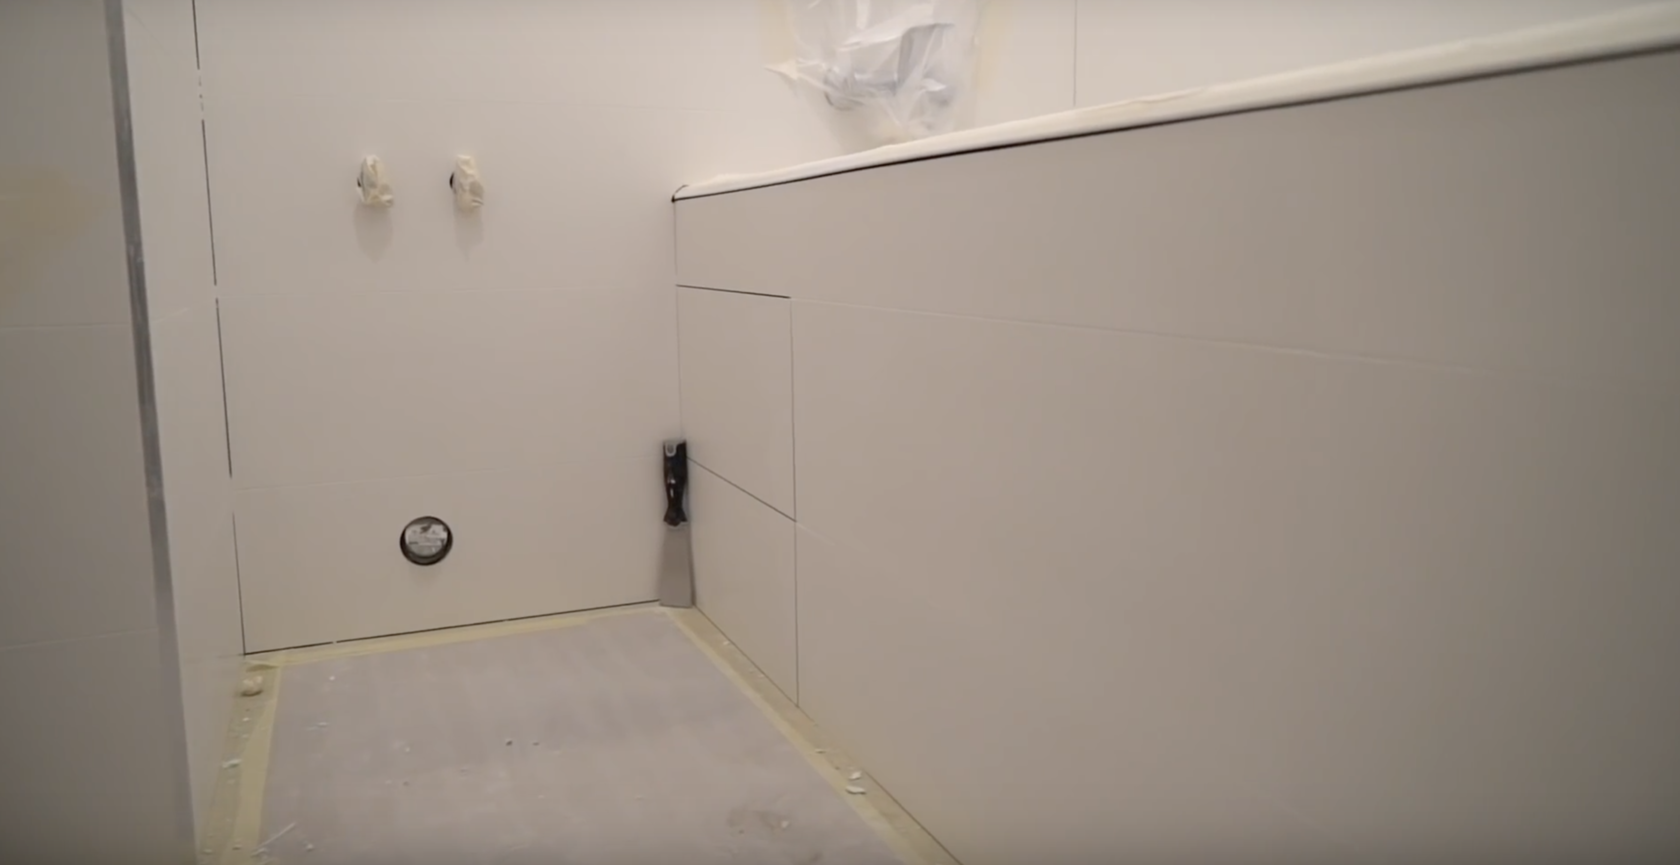 Экран под ванной из плитки: как сделать своими руками?